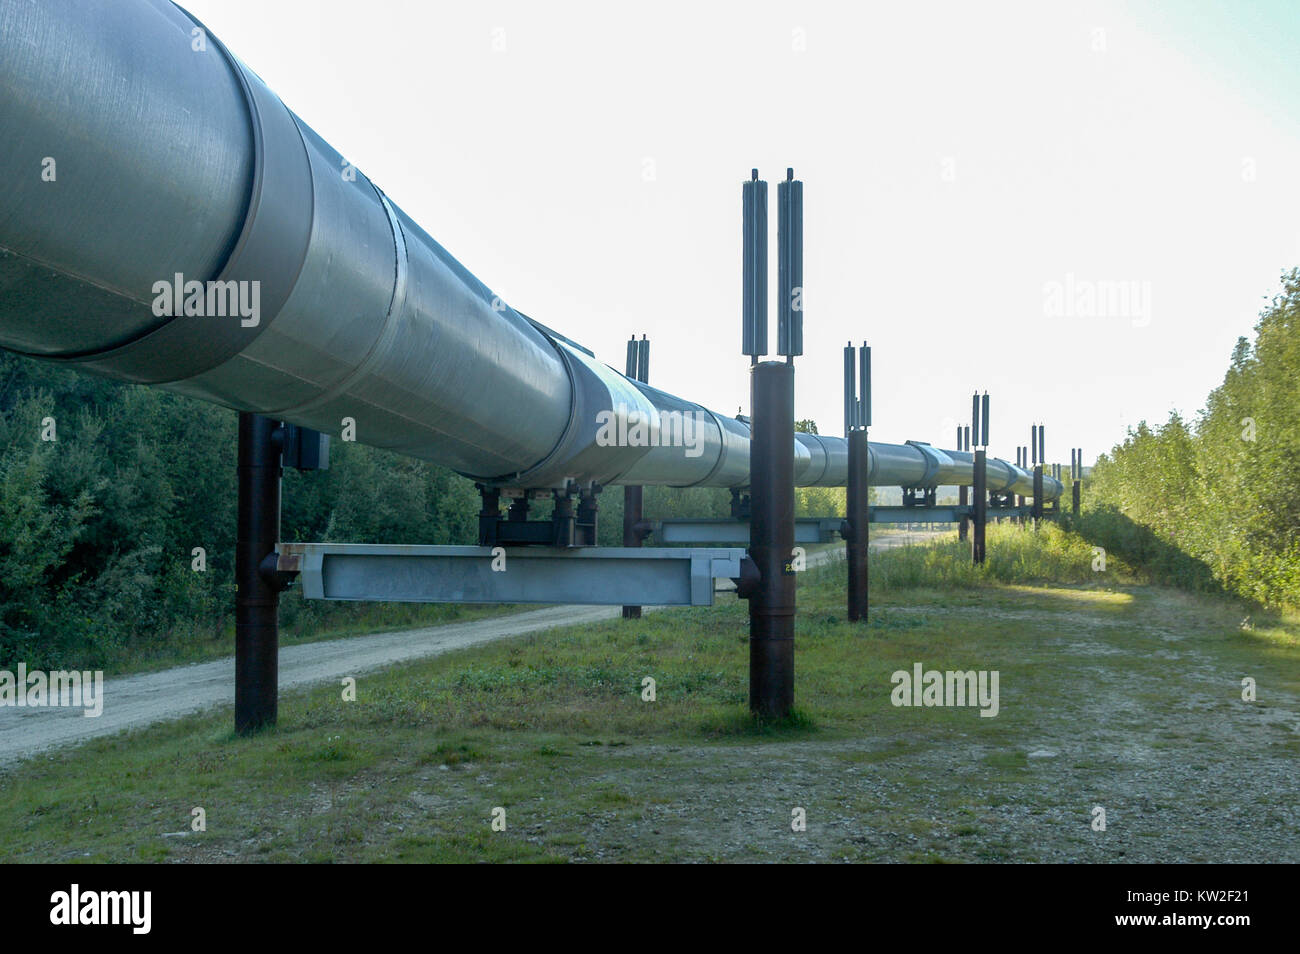 The Trans-Alaska oil pipeline (Alyeska pipeline) in Alaska Stock Photo